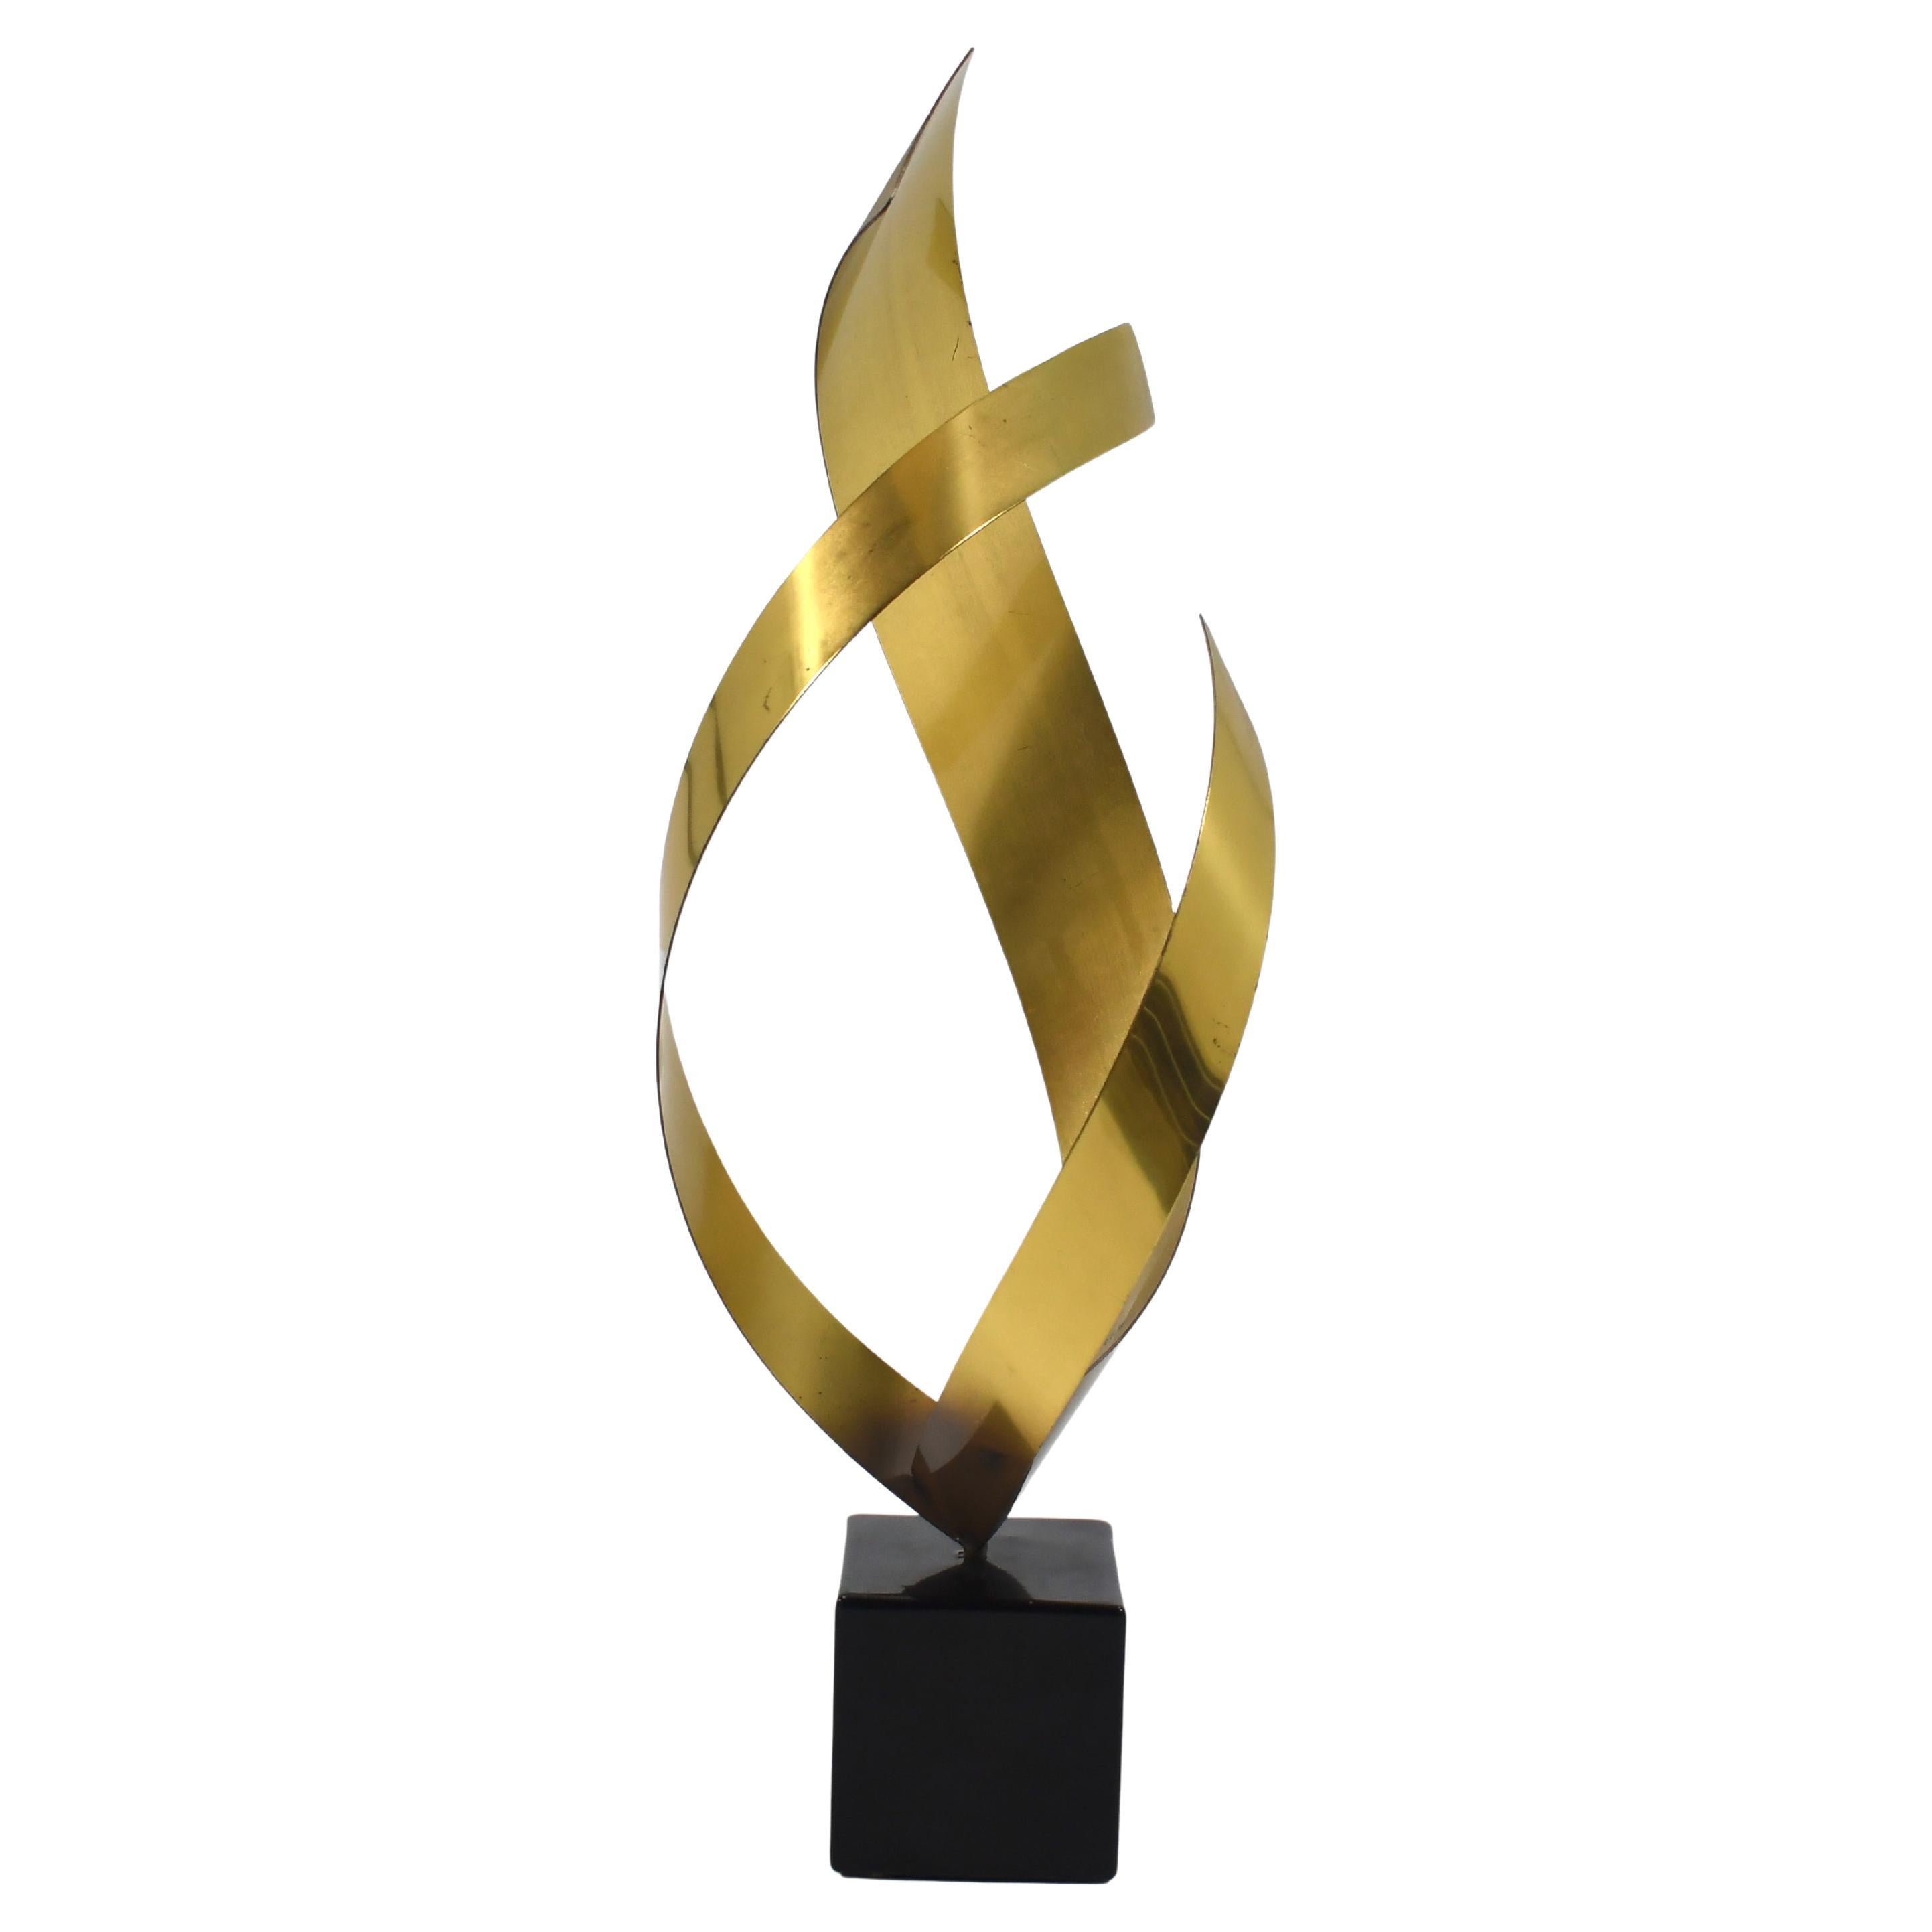 Ribbon Form "Flame" Sculpture by C.Jeré For Sale